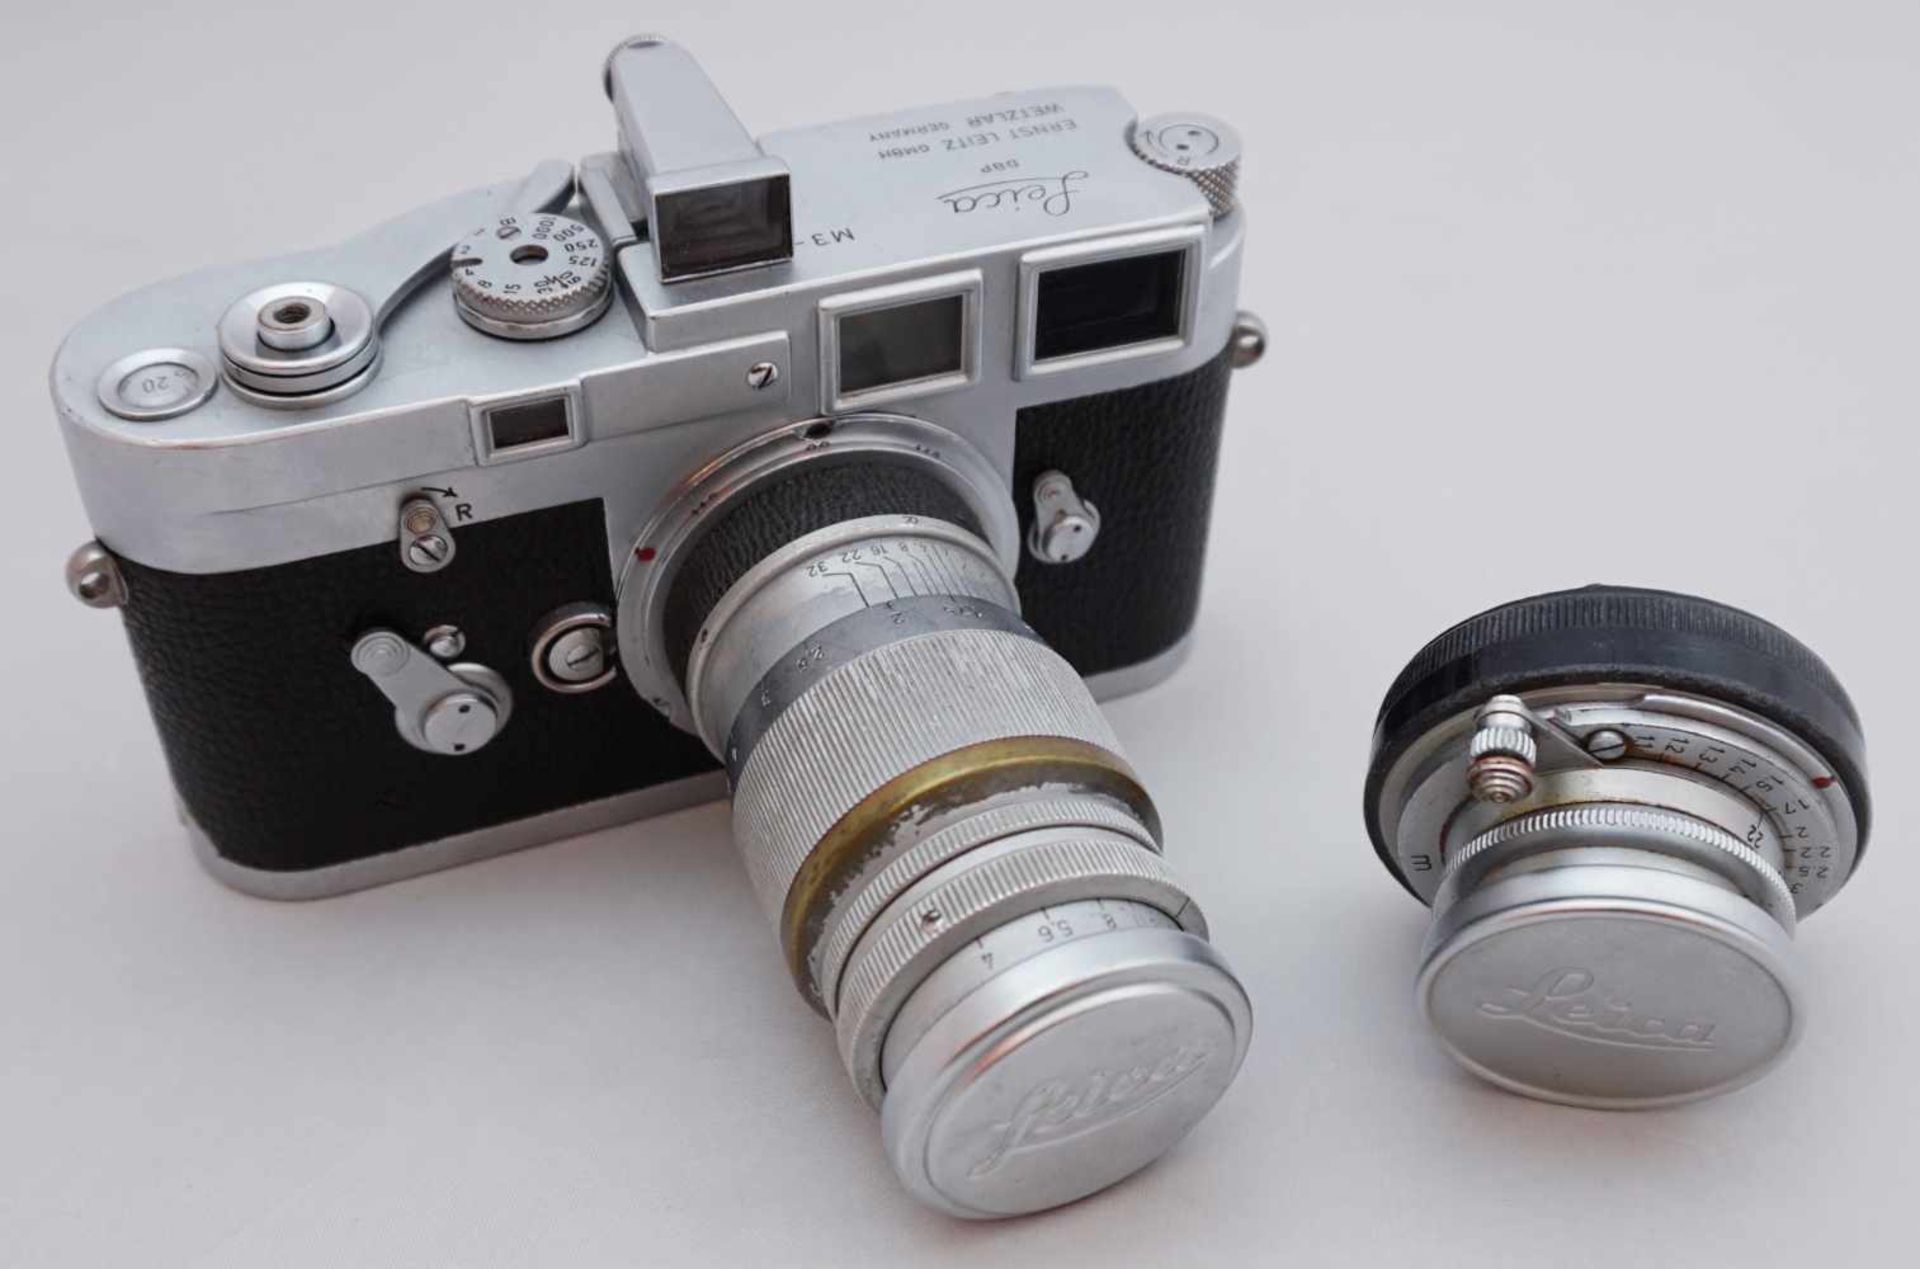 1 Fotoapparat LEICA "Ernst Leitz GmbH Wetzlar M3" wohl 1960er JahreObjektiv LEICA "Summaron F=3,